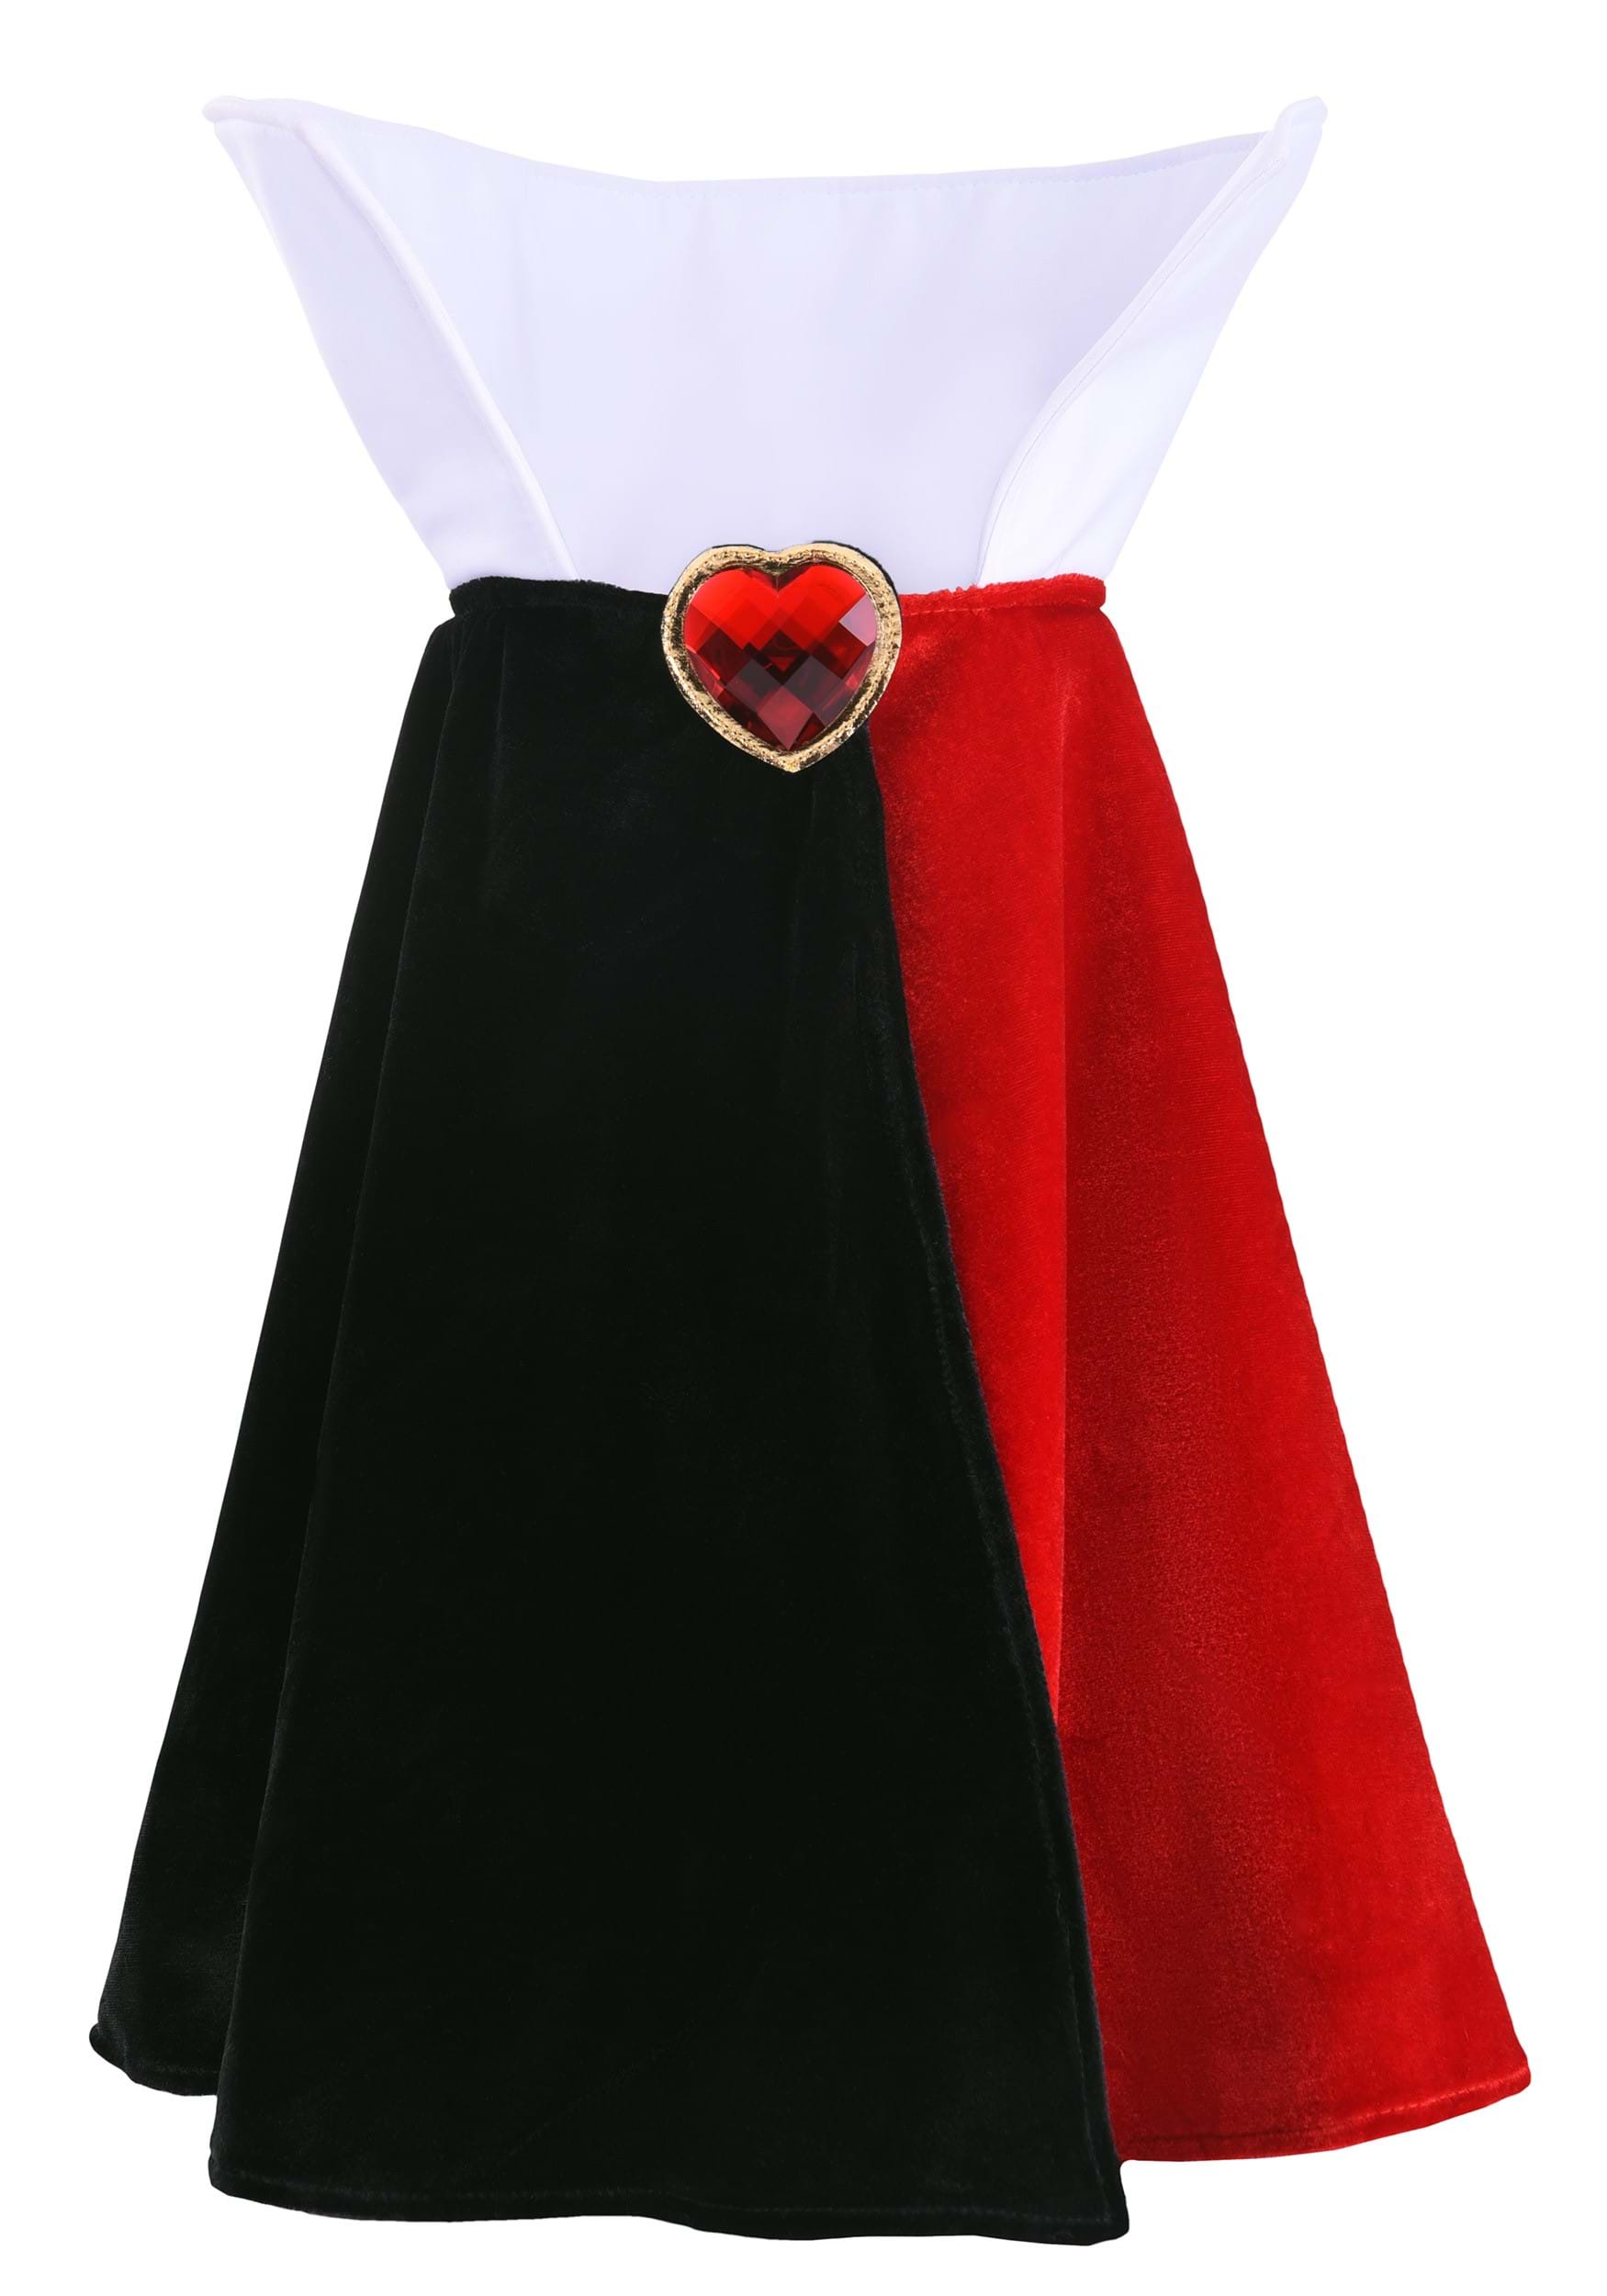 Queen Of Hearts Disney Costume Kit